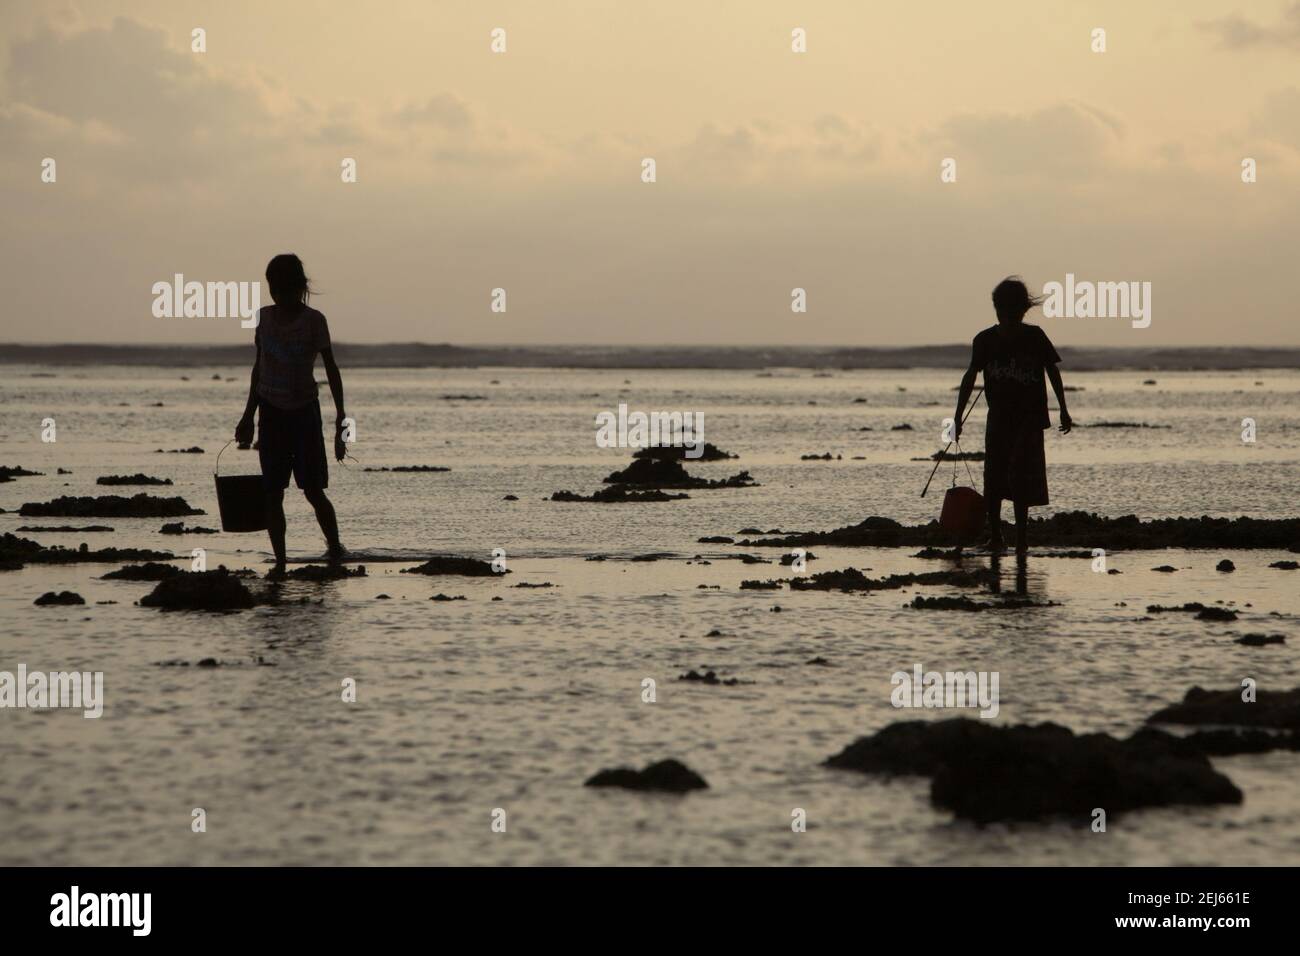 Les jeunes femmes ont fait la silhoueté lorsqu'elles marchent sur la plage rocheuse à marée basse, transportant des seaux en plastique pour recueillir des produits de la mer, une source alternative de nourriture saisonnière à l'île de Sumba, à l'est de Nusa Tenggara, en Indonésie. Banque D'Images